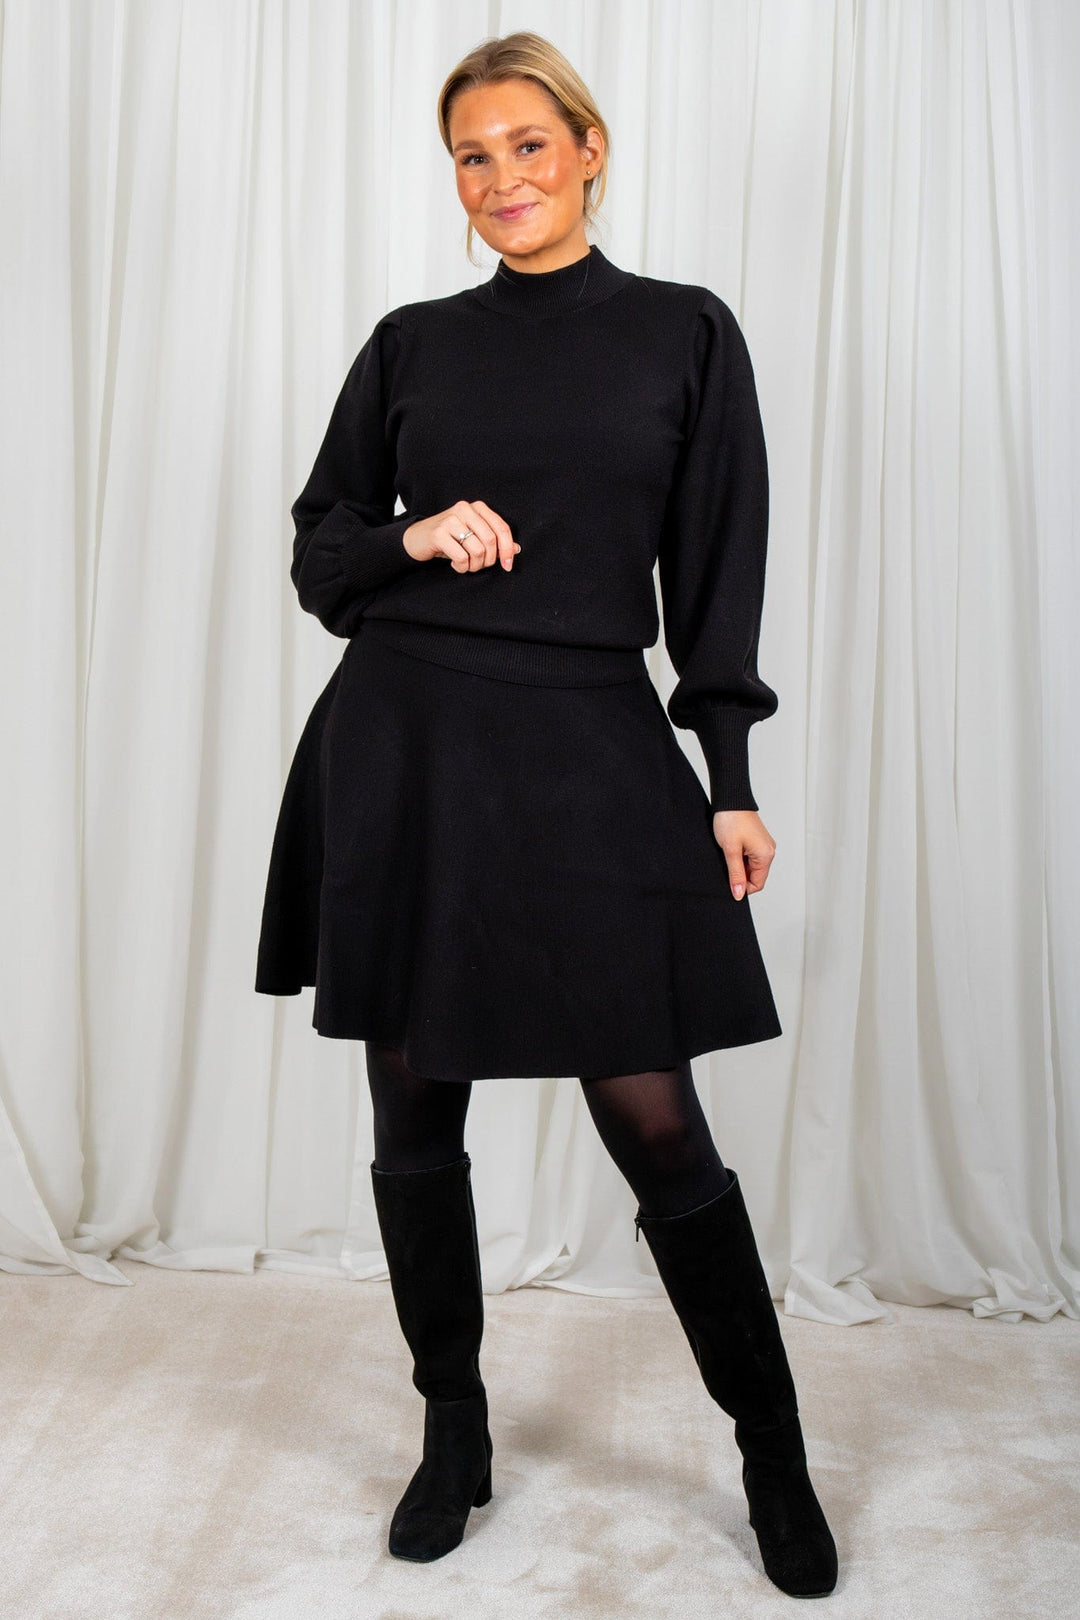 Yasfonny Ls Knit Pullover Black | Genser | Smuk - Dameklær på nett